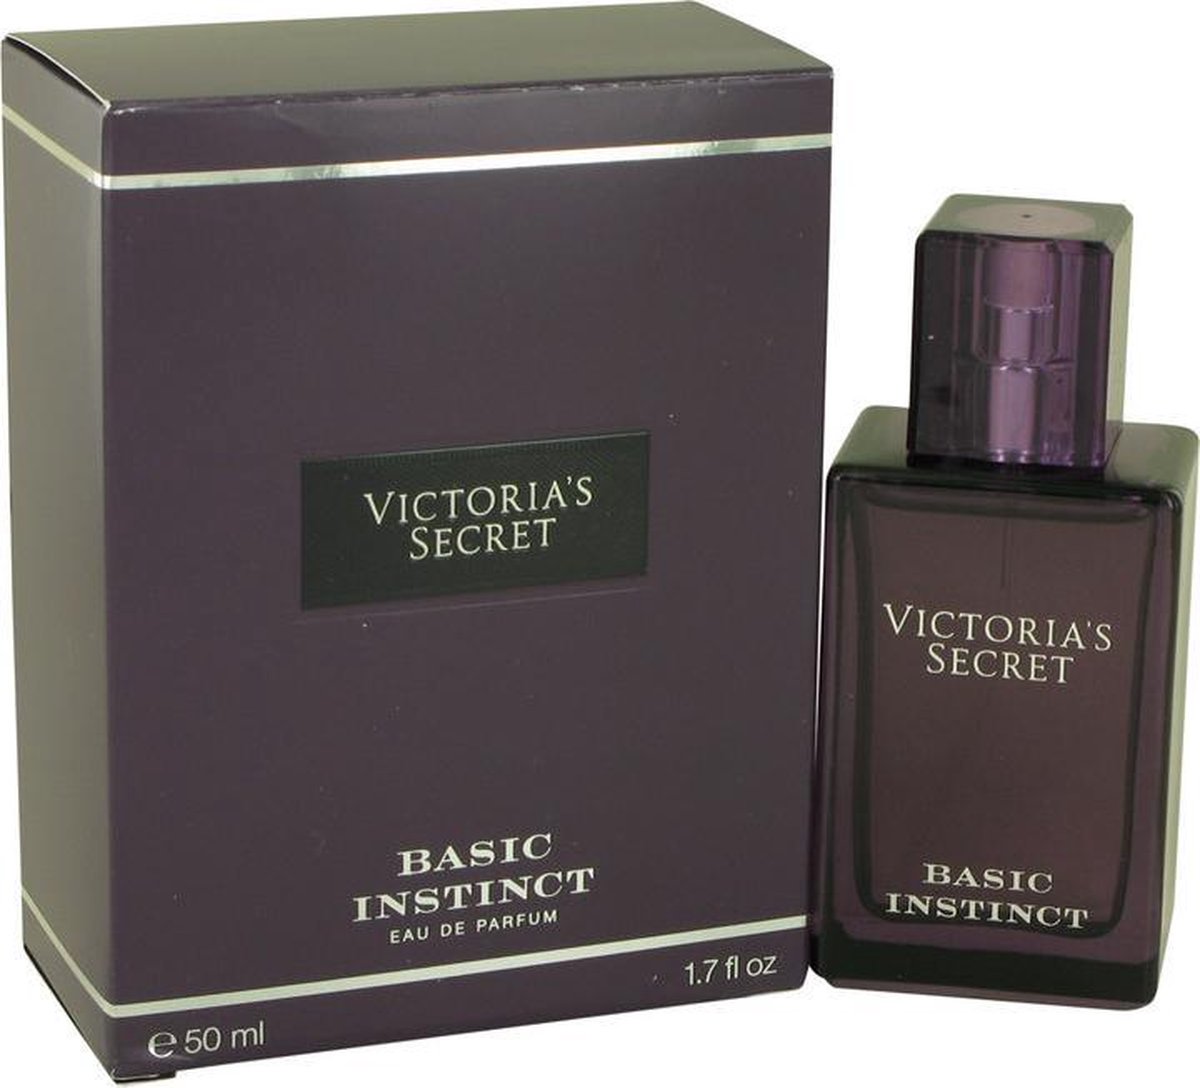 Victoria's Secret Basic Instinct - Eau de parfum spray - 50 ml